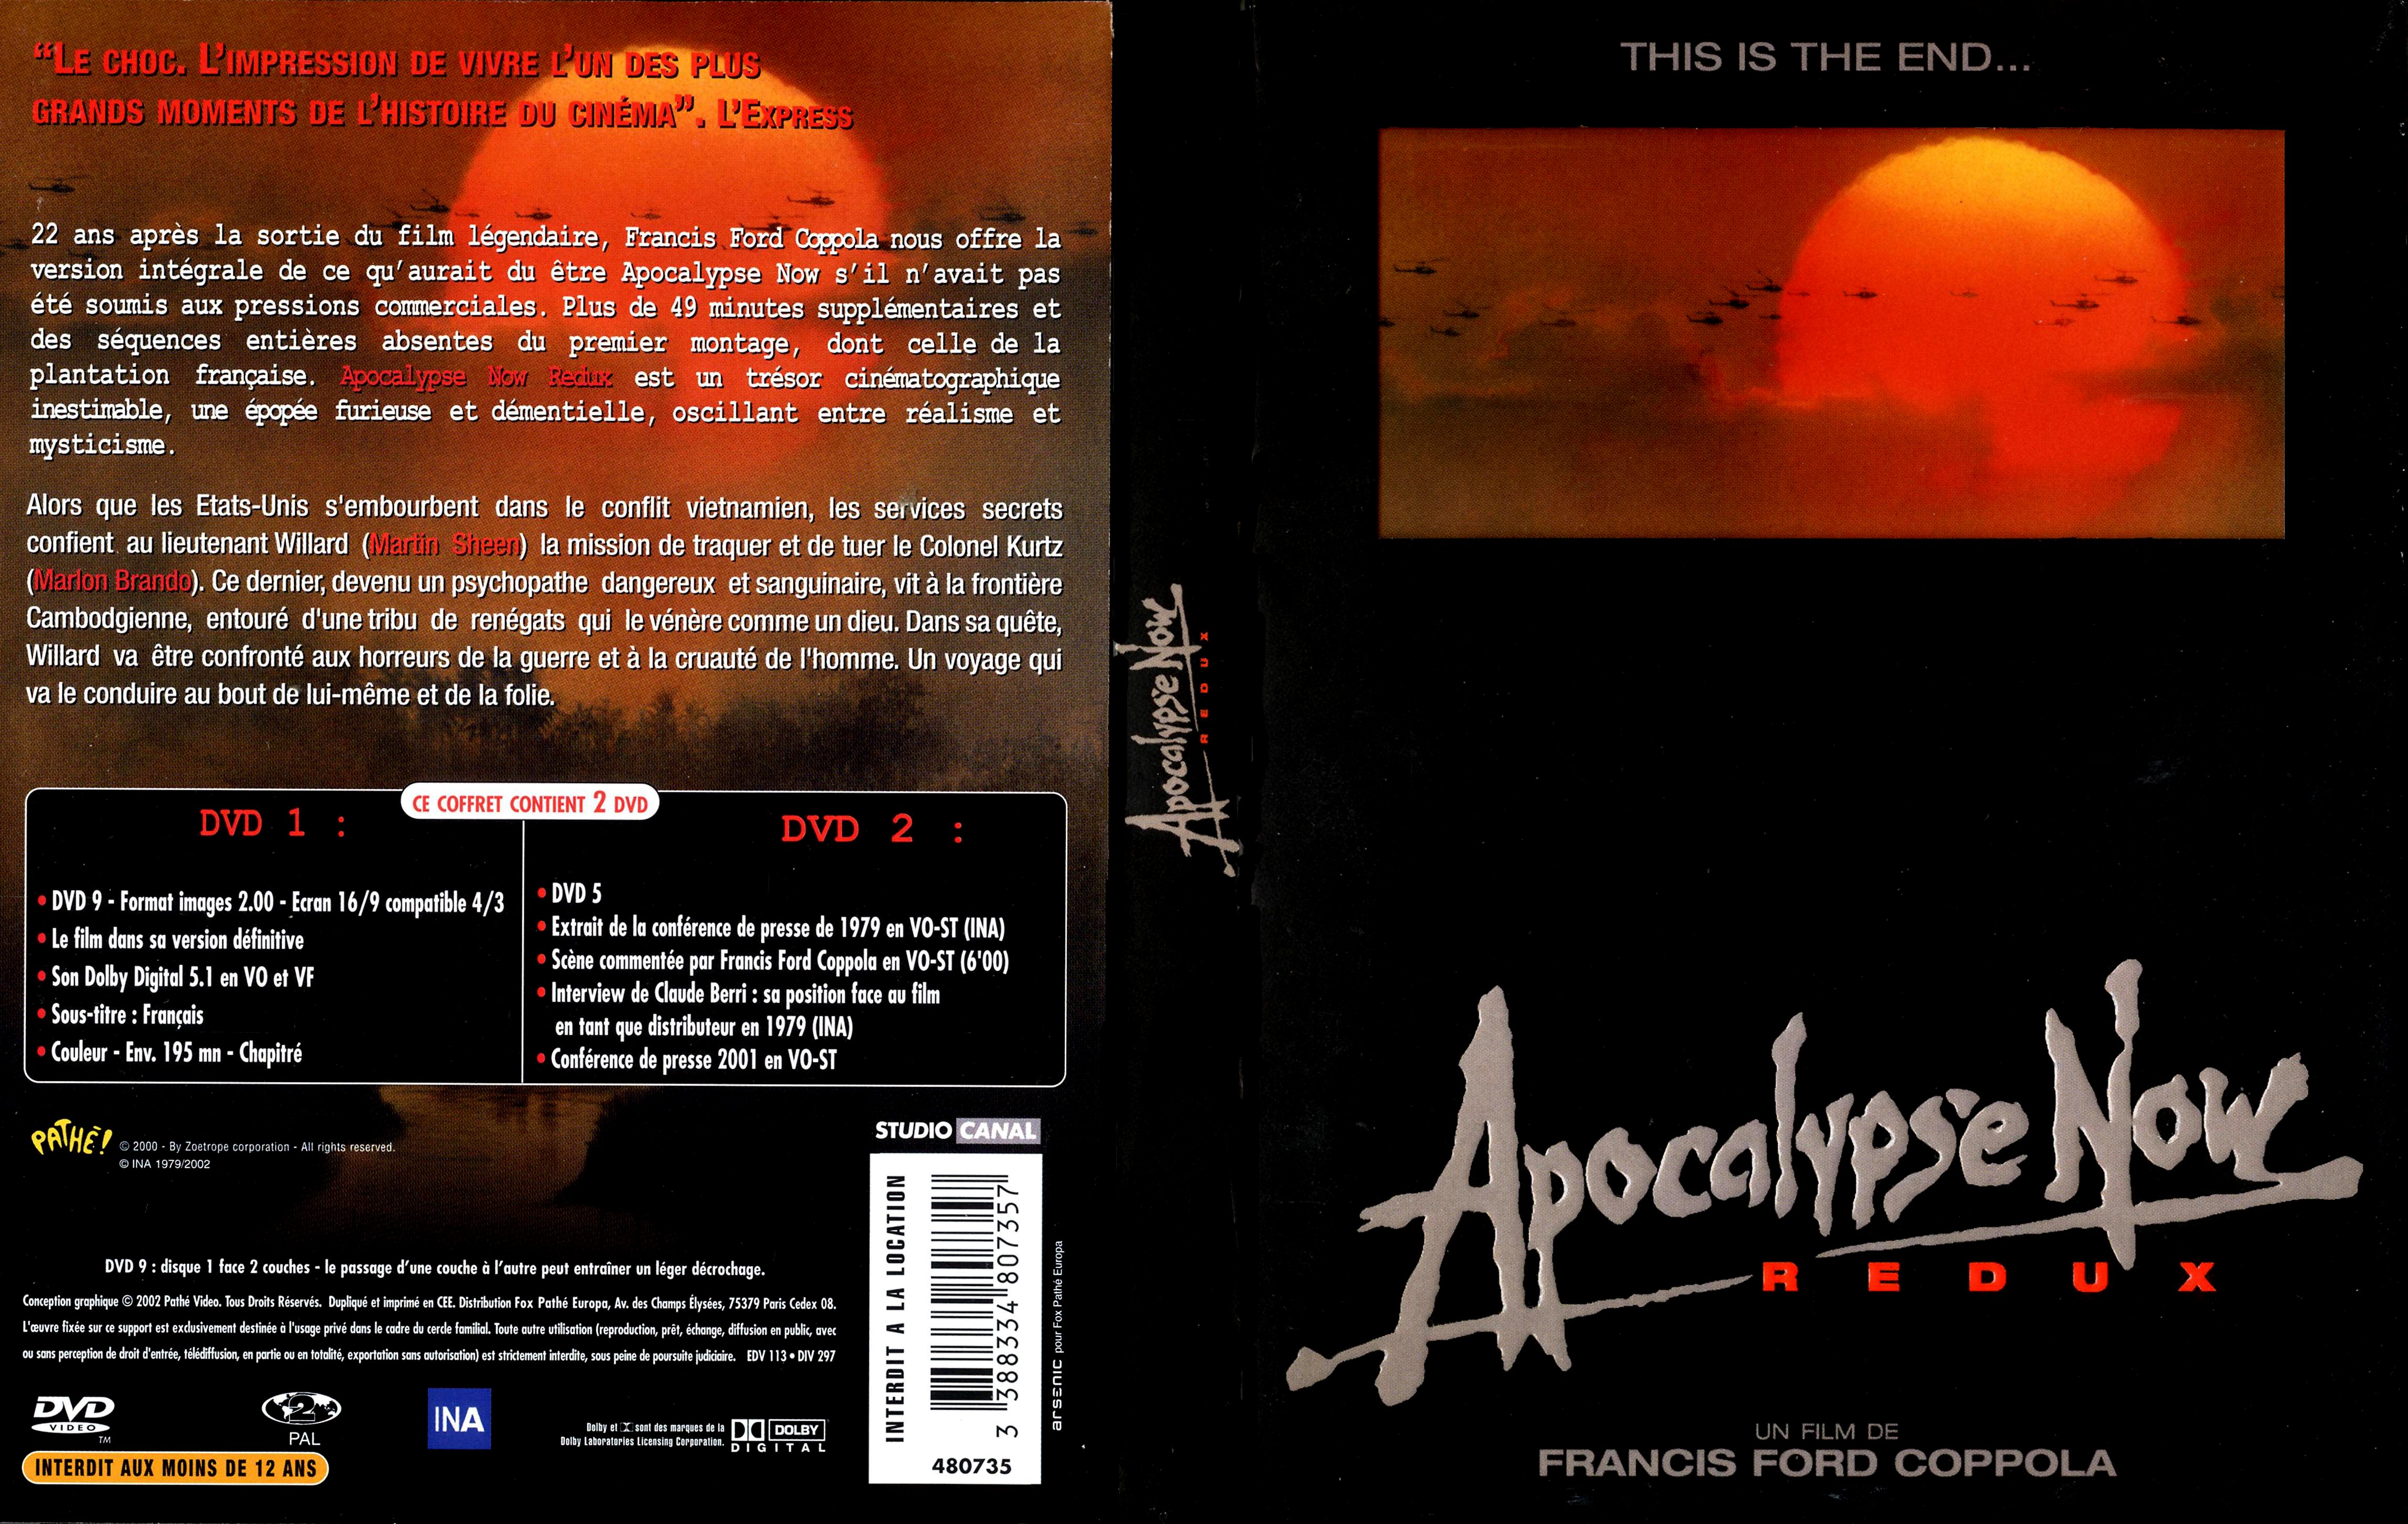 Jaquette DVD Apocalypse now redux v3